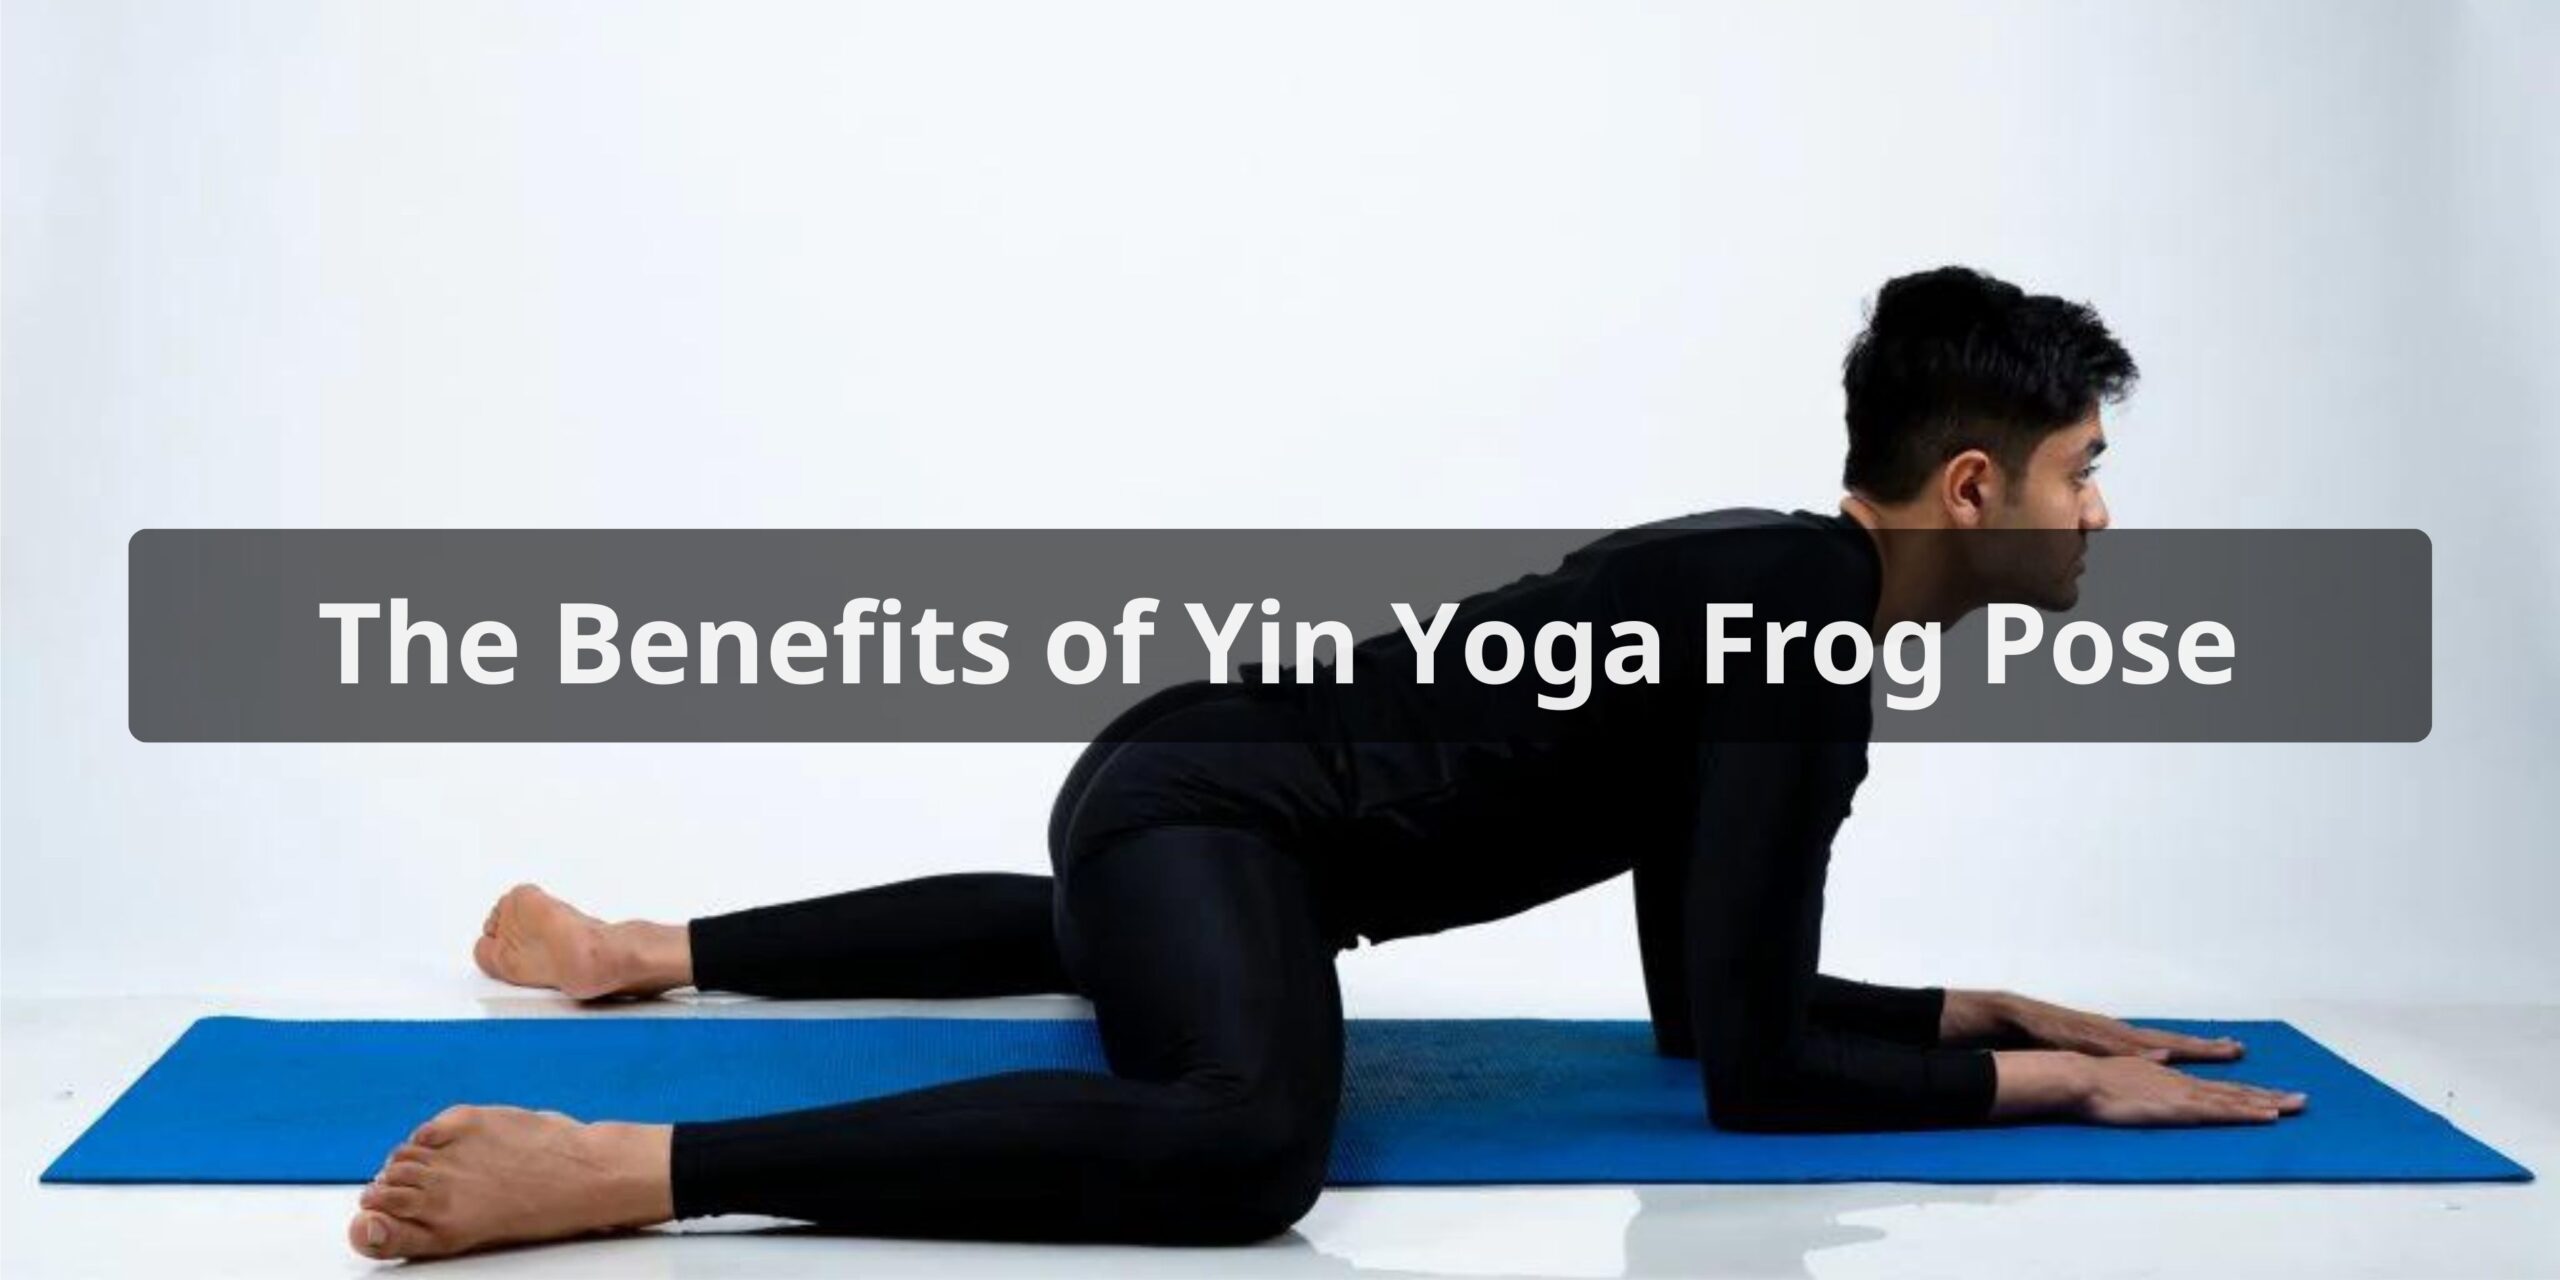 The Benefits of Yin Yoga Frog Pose